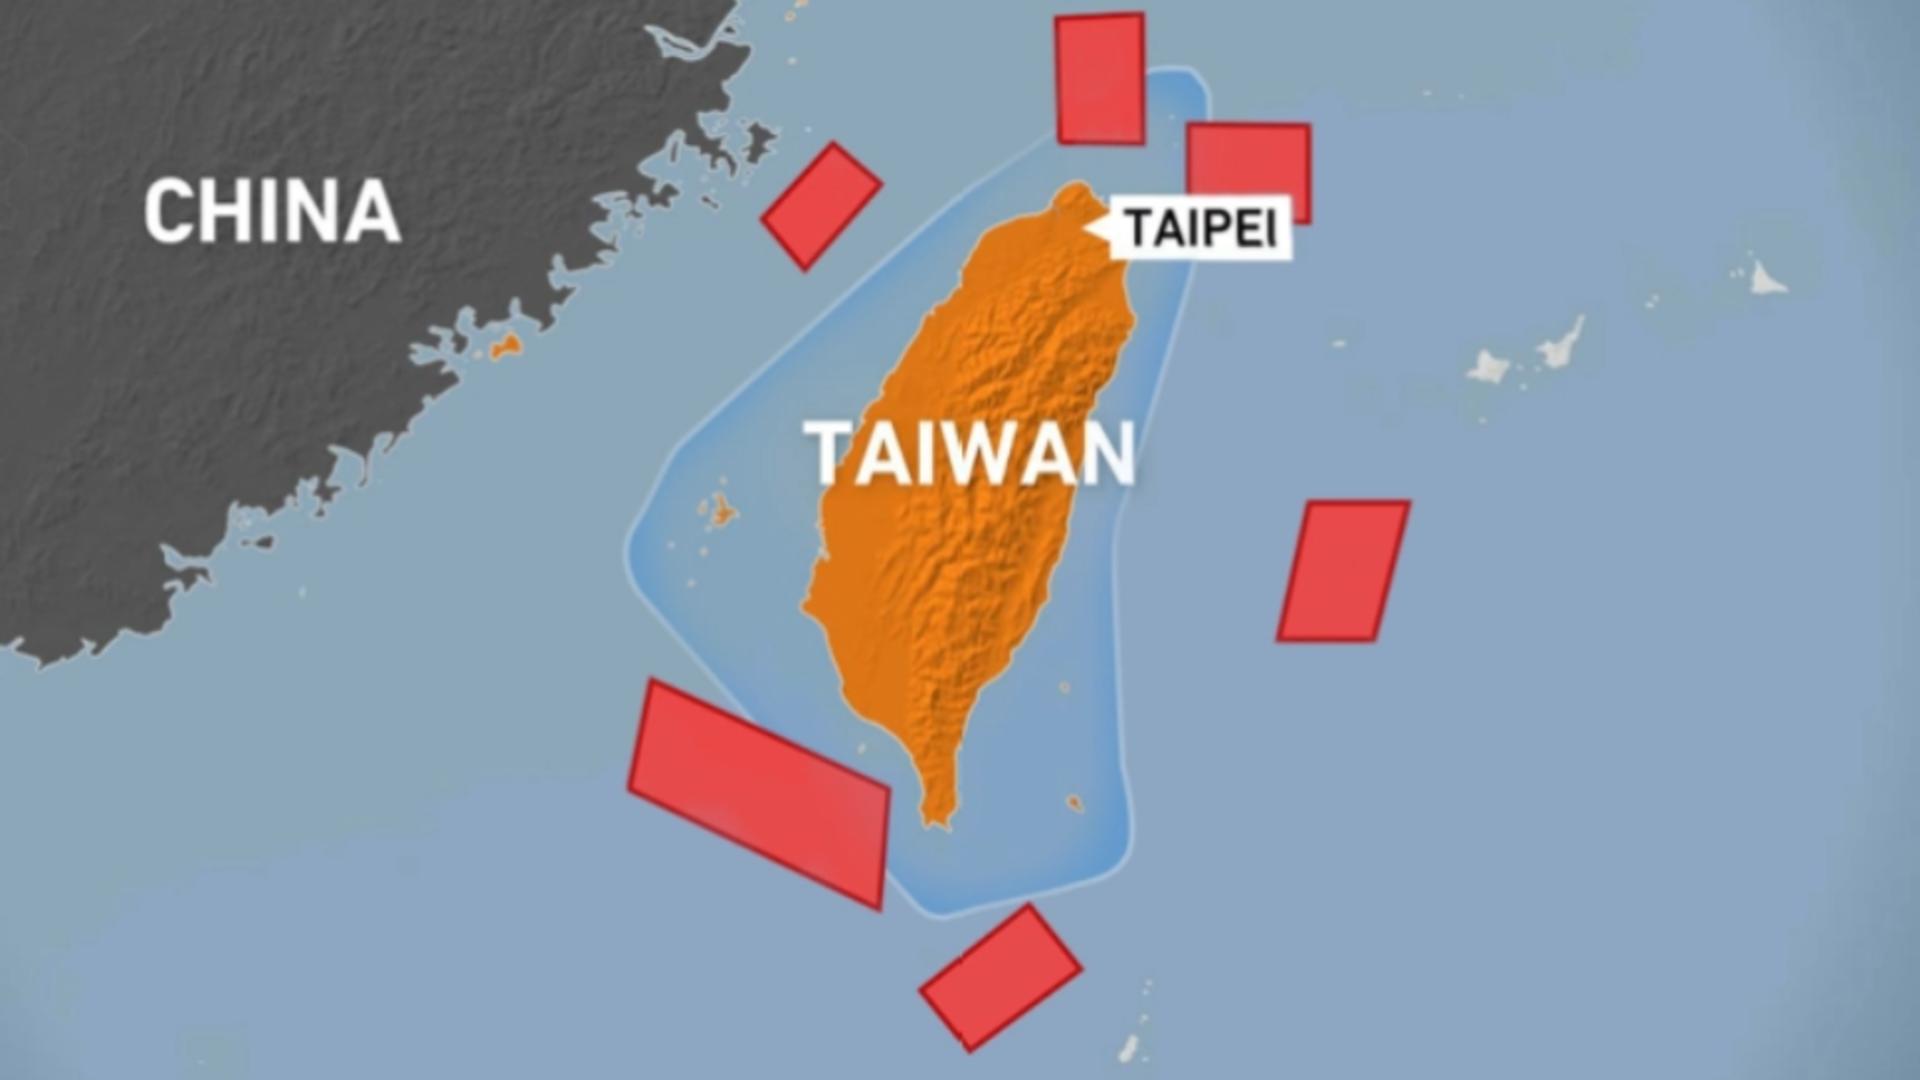 China vs Taiwan